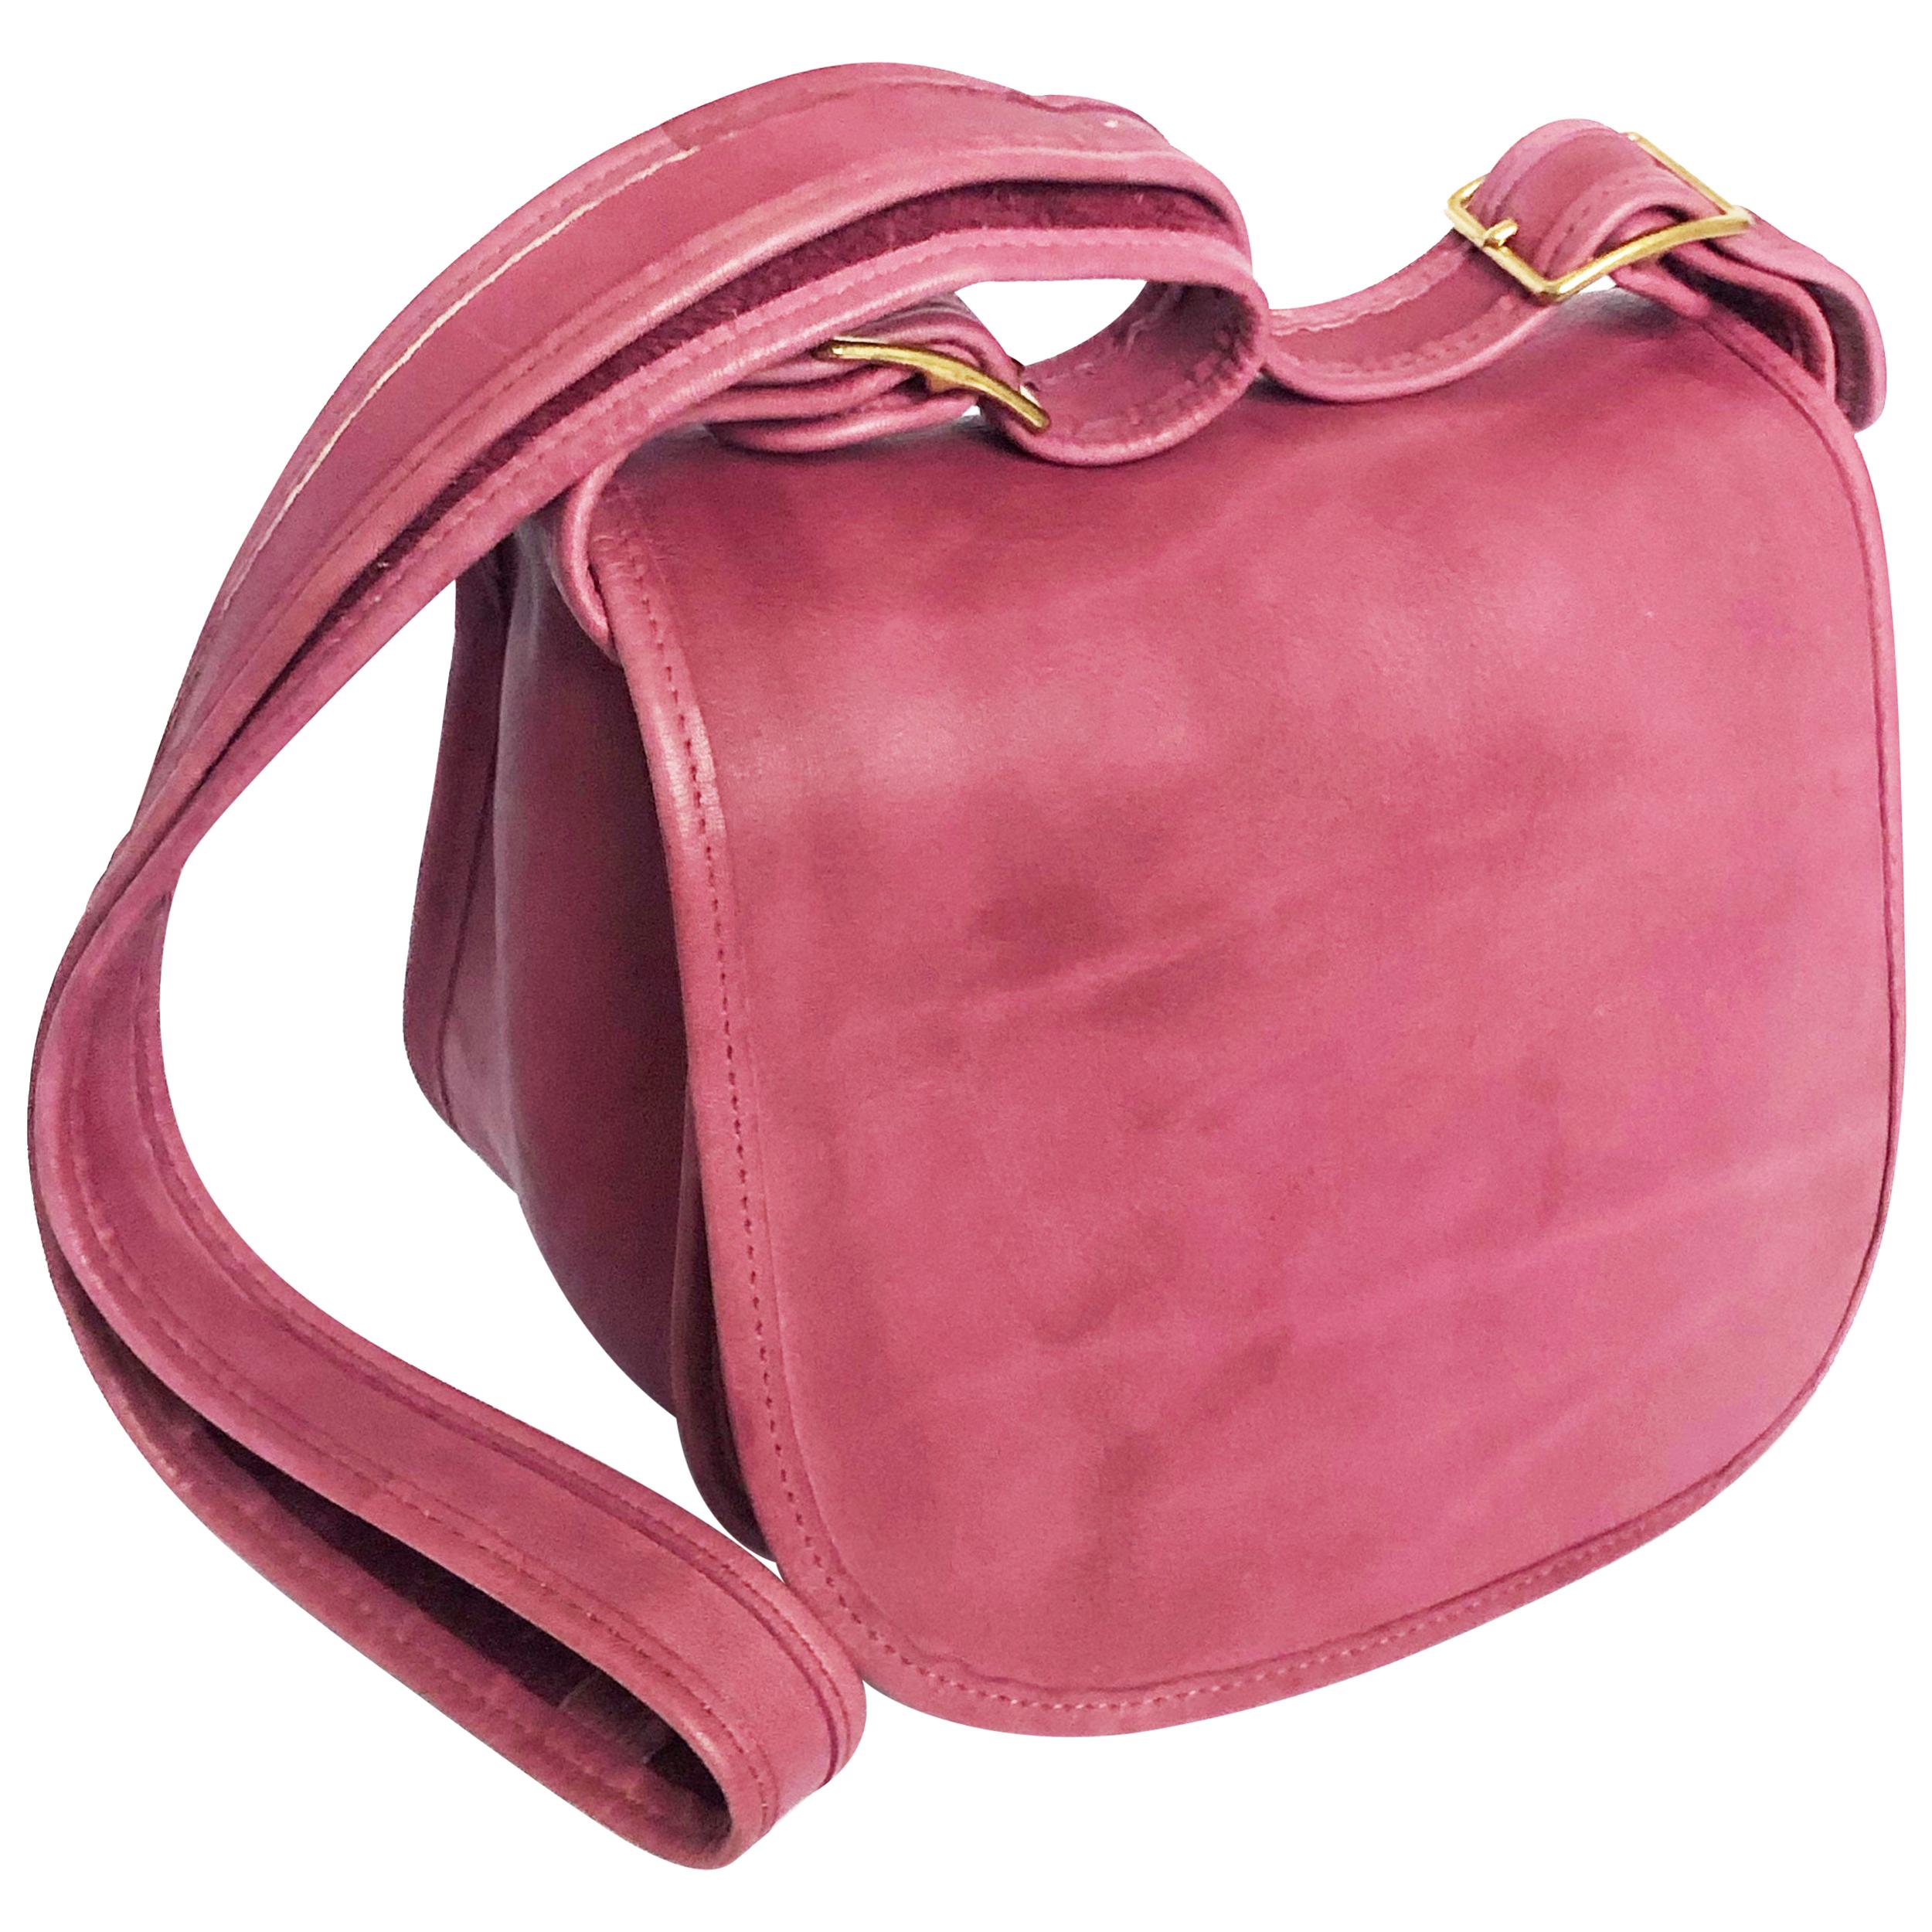 Vintage Bonnie Cashin Coach Bag Messenger Shoulder Bag Rose Pink Leather Rare